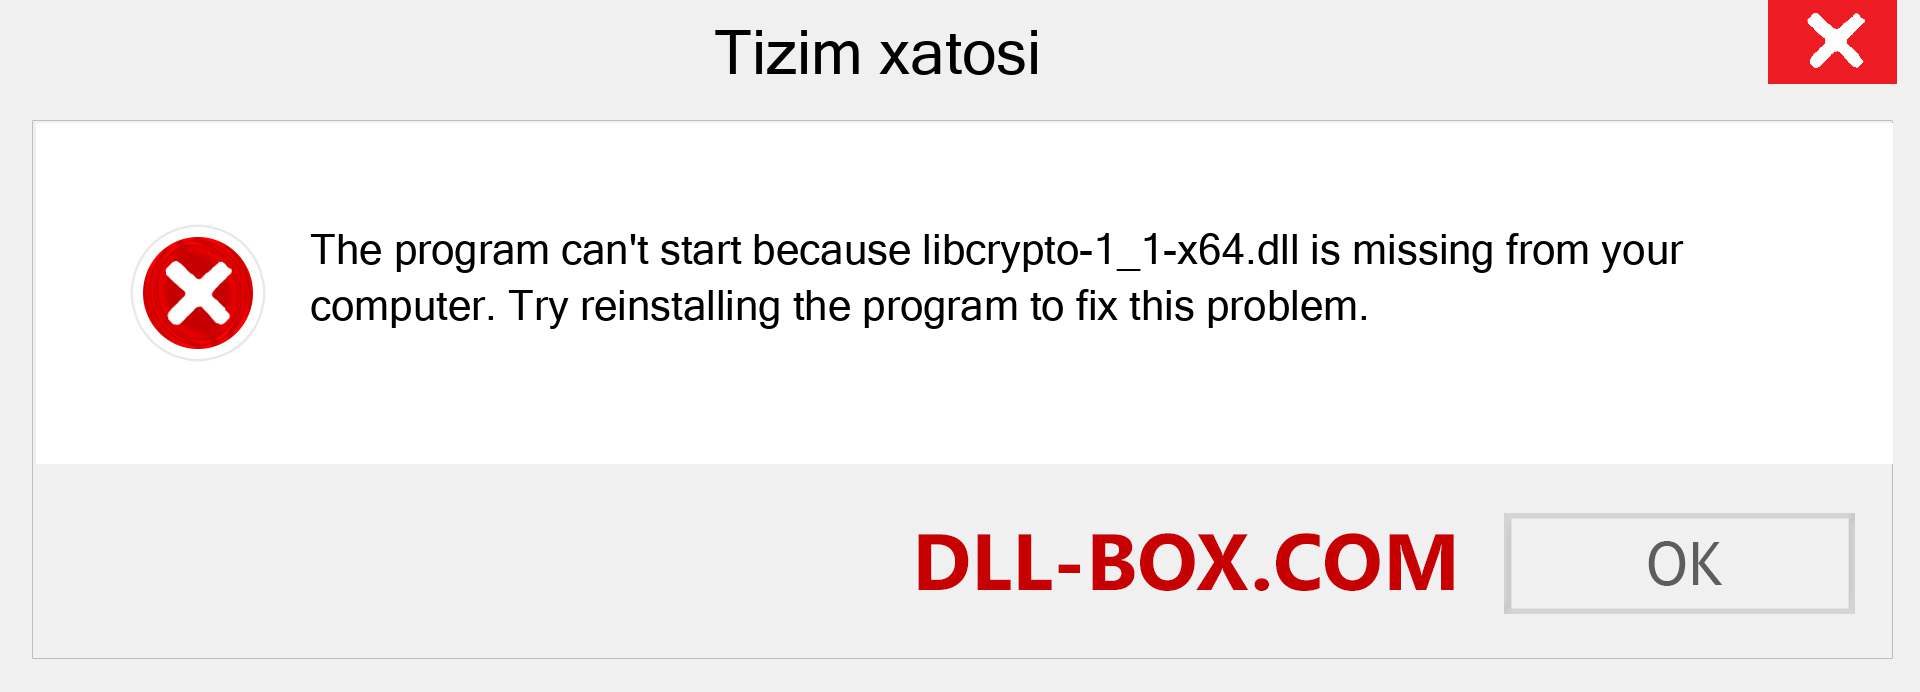 libcrypto-1_1-x64.dll fayli yo'qolganmi?. Windows 7, 8, 10 uchun yuklab olish - Windowsda libcrypto-1_1-x64 dll etishmayotgan xatoni tuzating, rasmlar, rasmlar